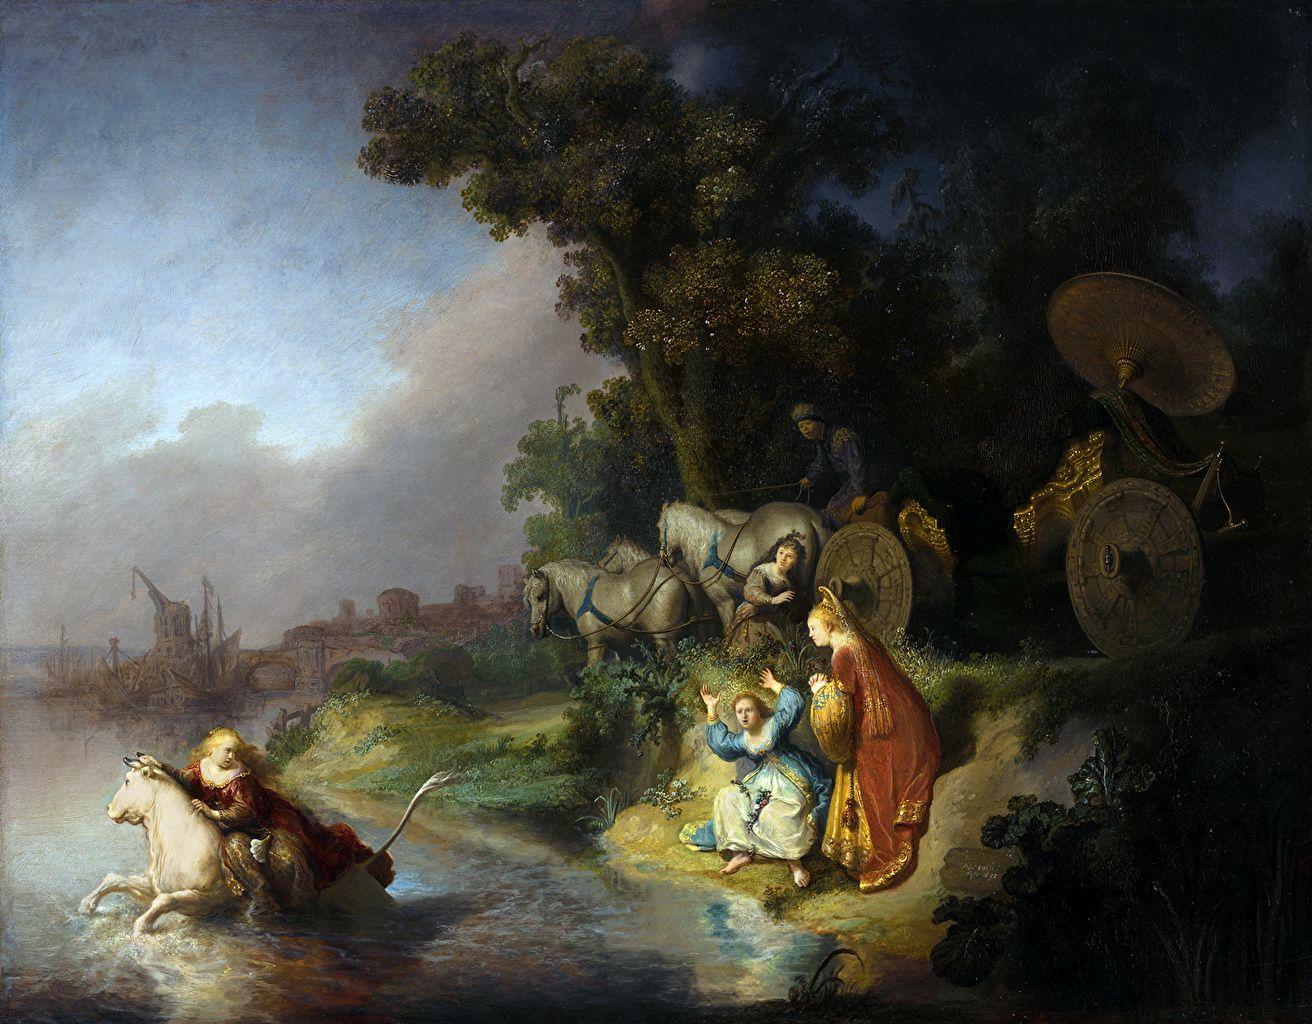 Wallpaper Rembrandt Harmenszoon van Rijn, Belshazzar's Feast, The